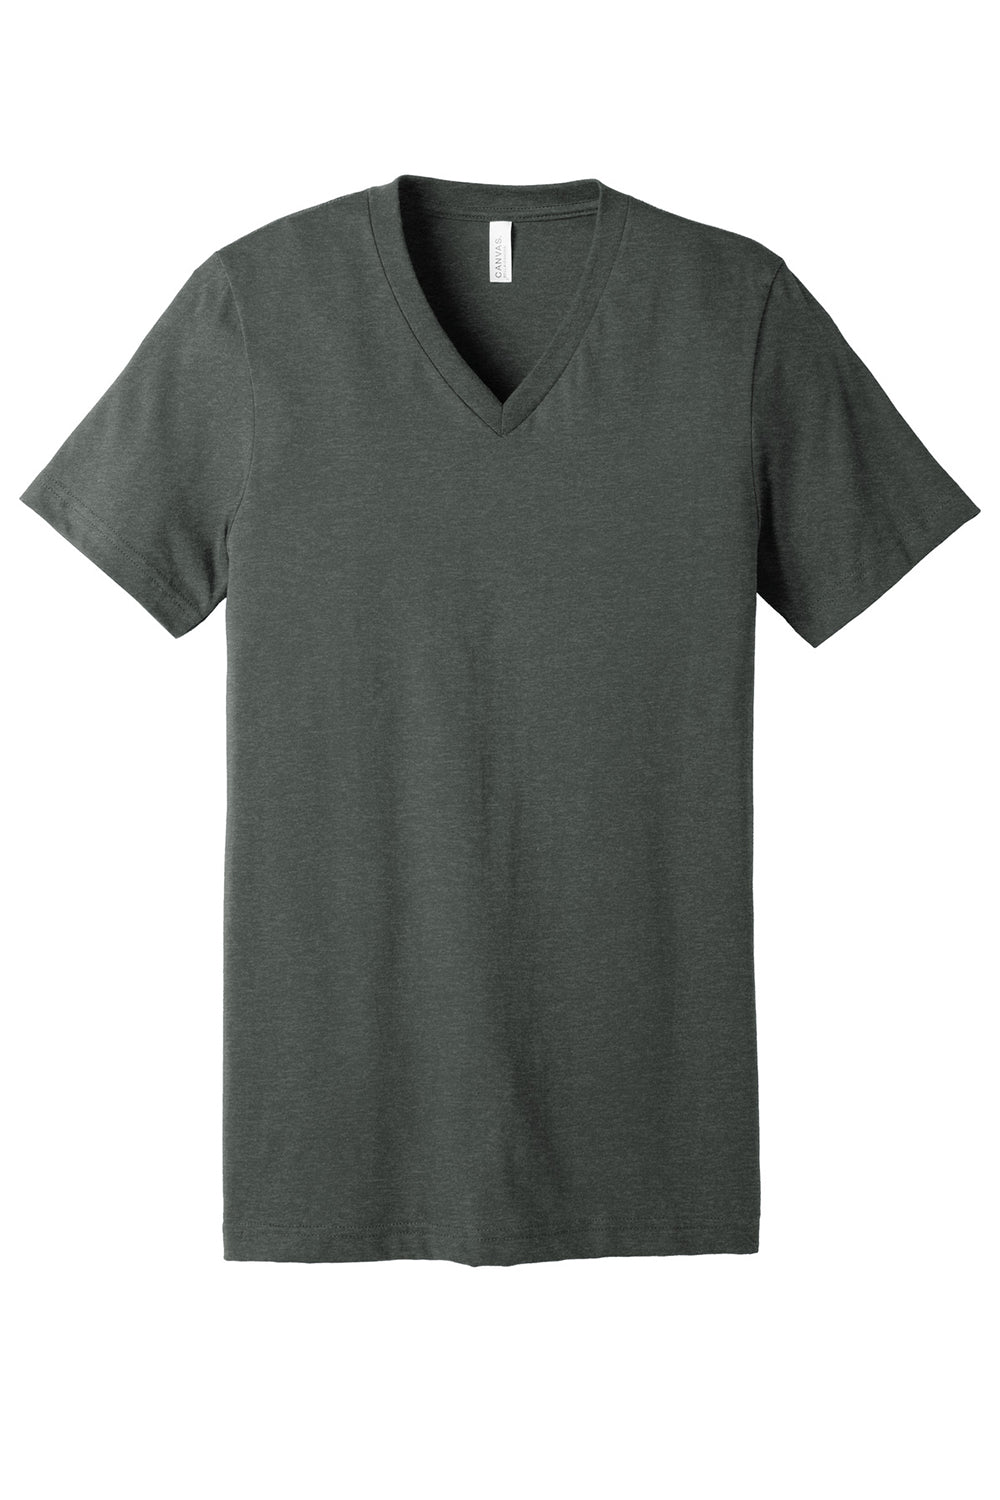 Bella + Canvas BC3005CVC Mens CVC Short Sleeve V-Neck T-Shirt Heather Deep Grey Flat Front